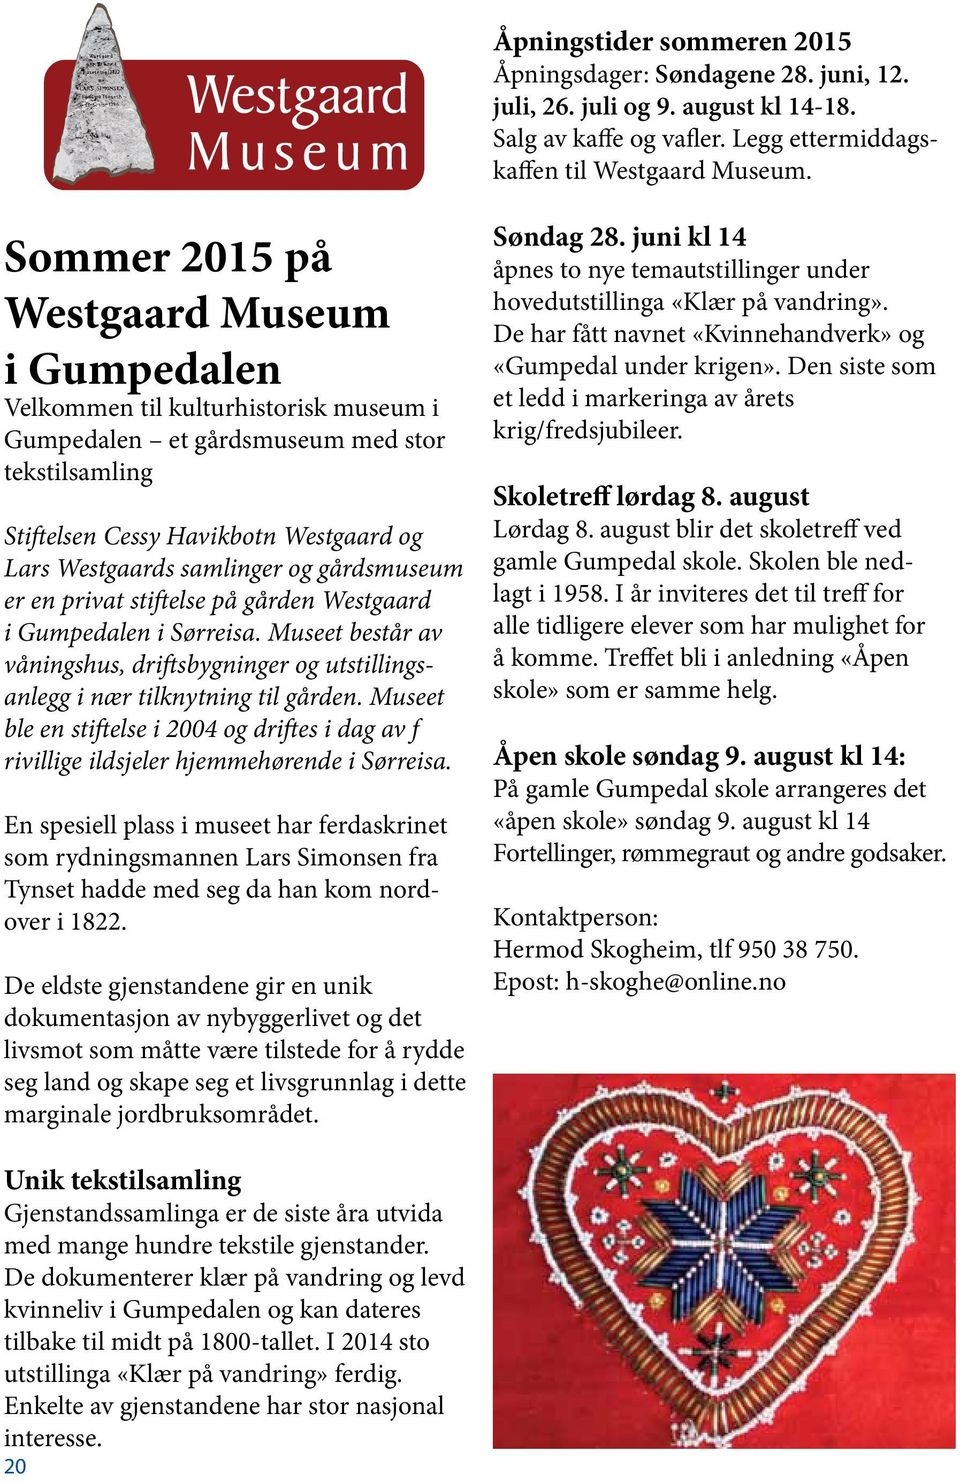 og gårdsmuseum er en privat stiftelse på gården Westgaard i Gumpedalen i Sørreisa. Museet består av våningshus, driftsbygninger og utstillingsanlegg i nær tilknytning til gården.